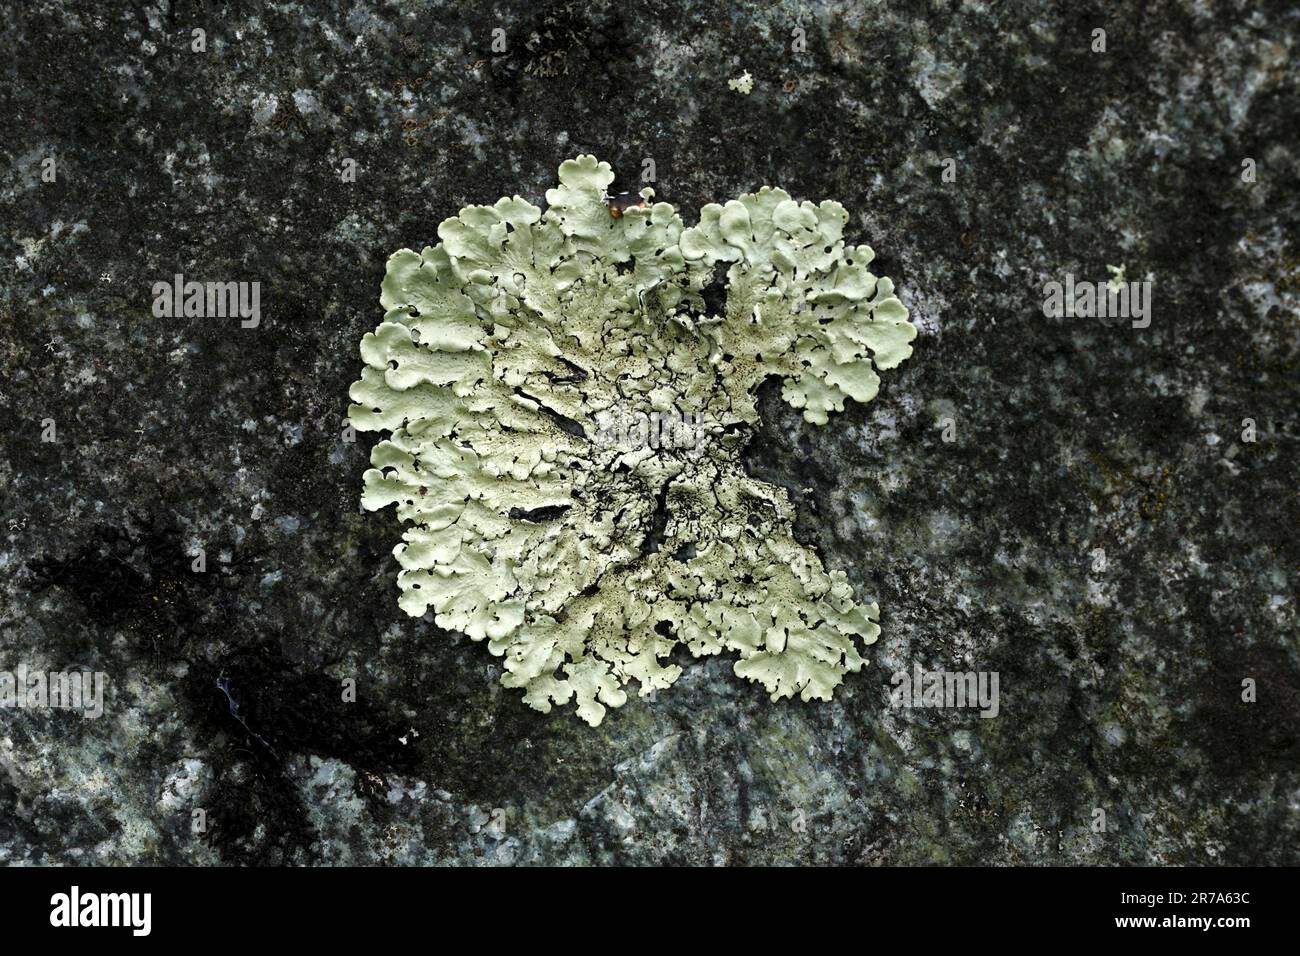 Flavoparmelia caperata. Variety of Lichen in the British Isles. Stock Photo